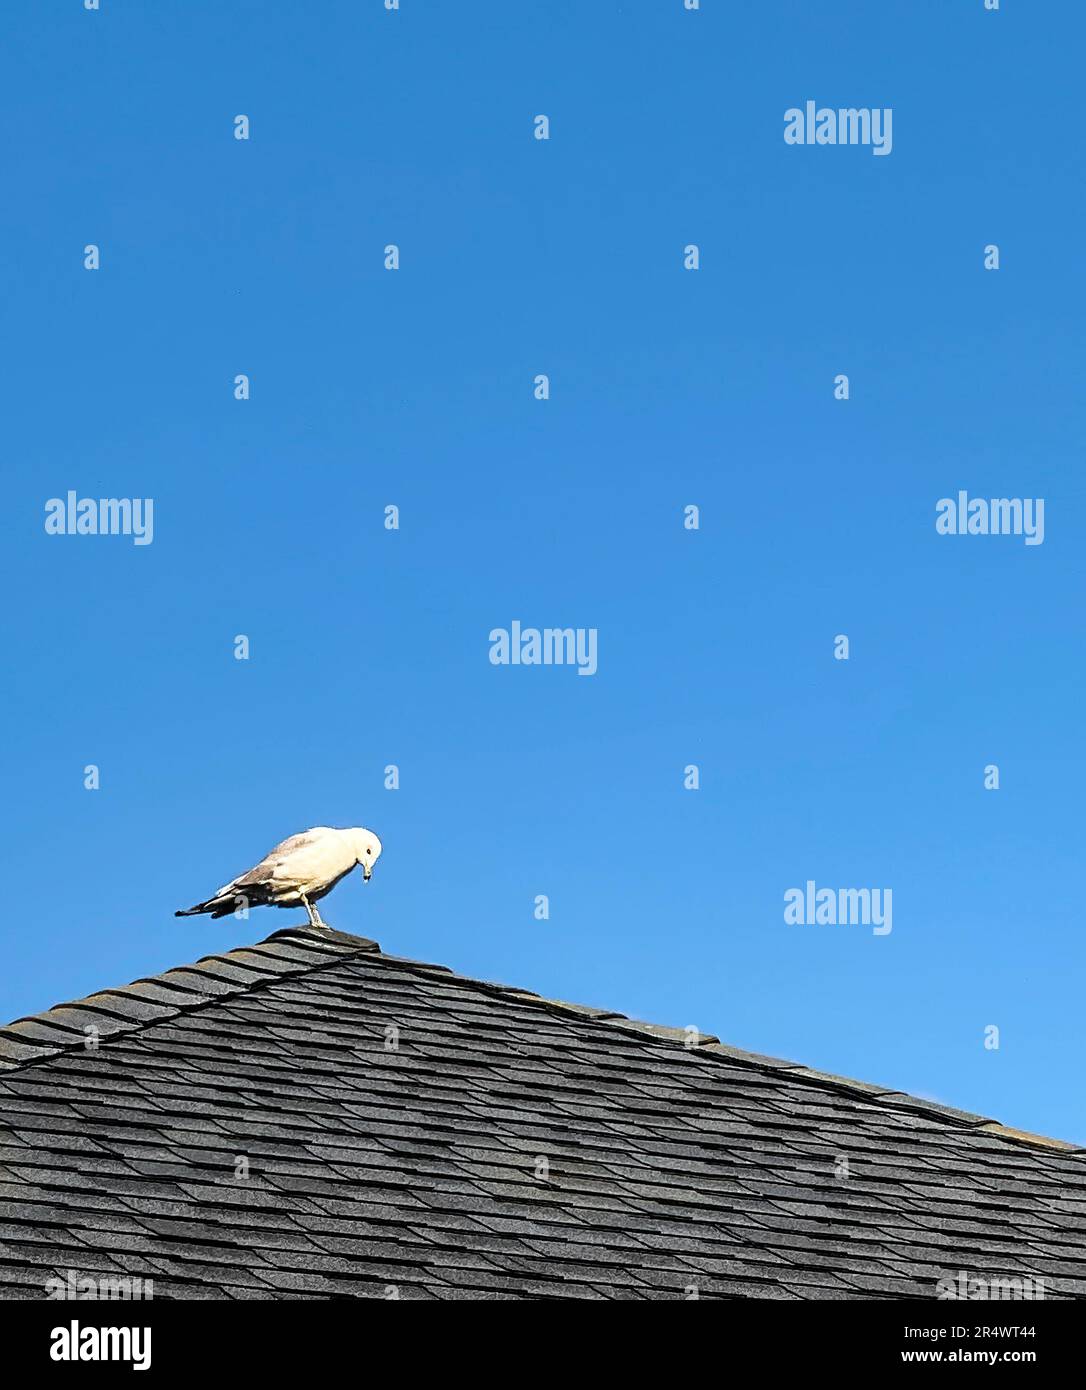 Ein Möwen-Vogel auf dem Schindeldach, gegen den blauen Himmel. Sauber, Küste, Sommerstimmung. Speicherplatz kopieren. Stockfoto